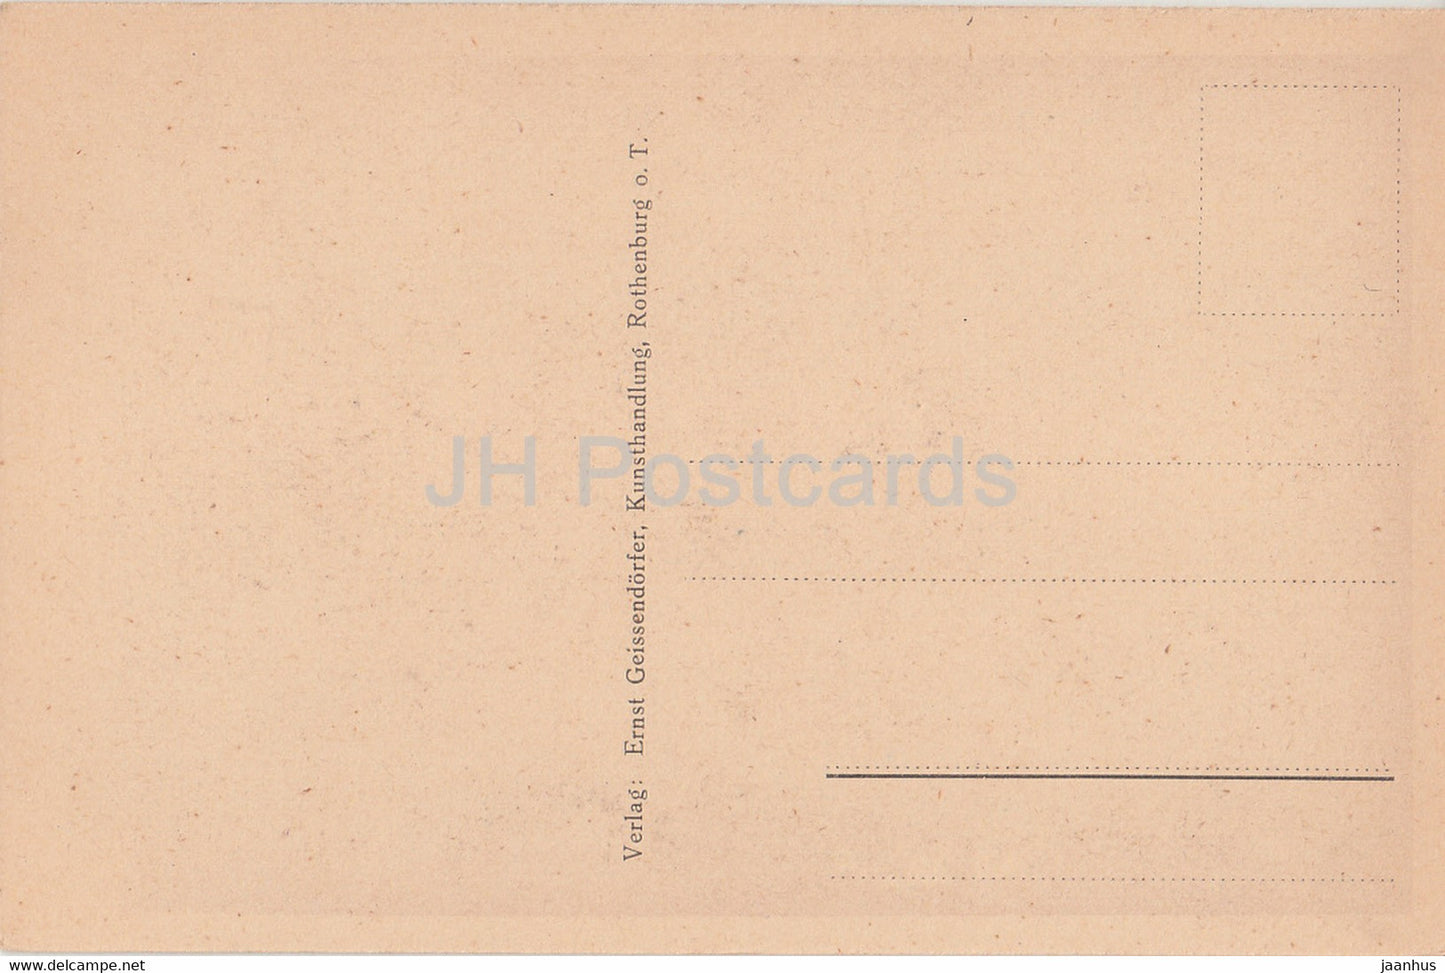 Rothenburg o d Tauber - Brautture der St Jakobskirche - old postcard - Germany - unused